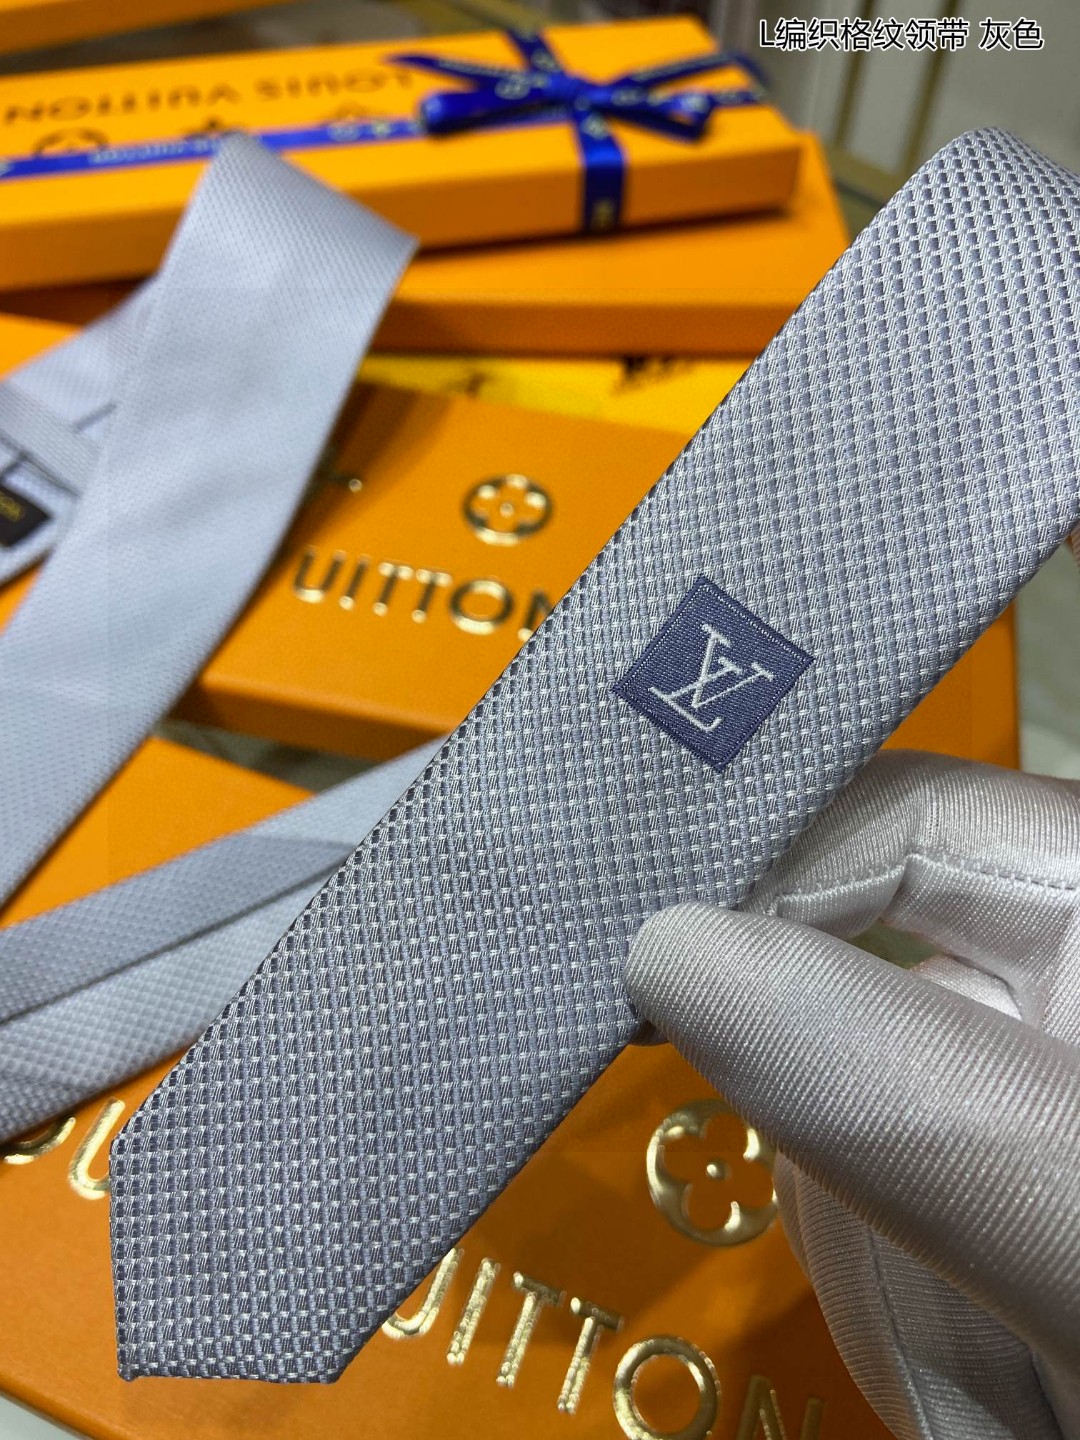 特价男士领带系列L编织格纹领带稀有展现精湛手工与时尚优雅的理想选择此款真丝织就的DiamondsV领带以